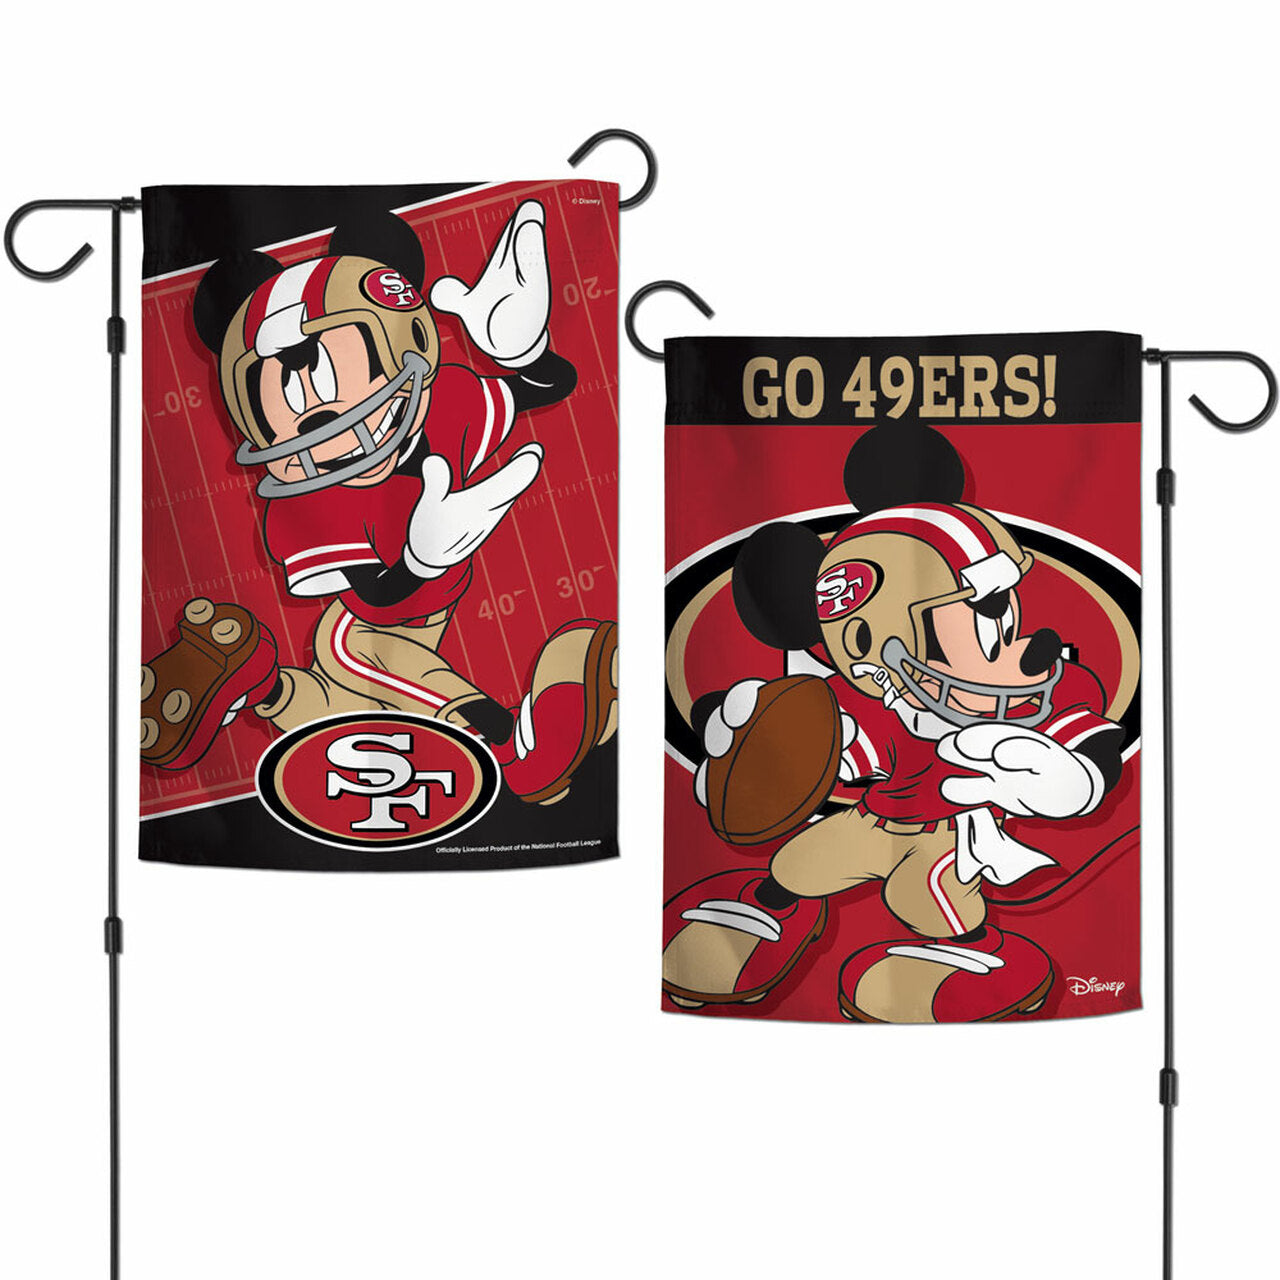 San Francisco 49ers Disney 12" x 18" Garden Flag 2 Sided by Wincraft